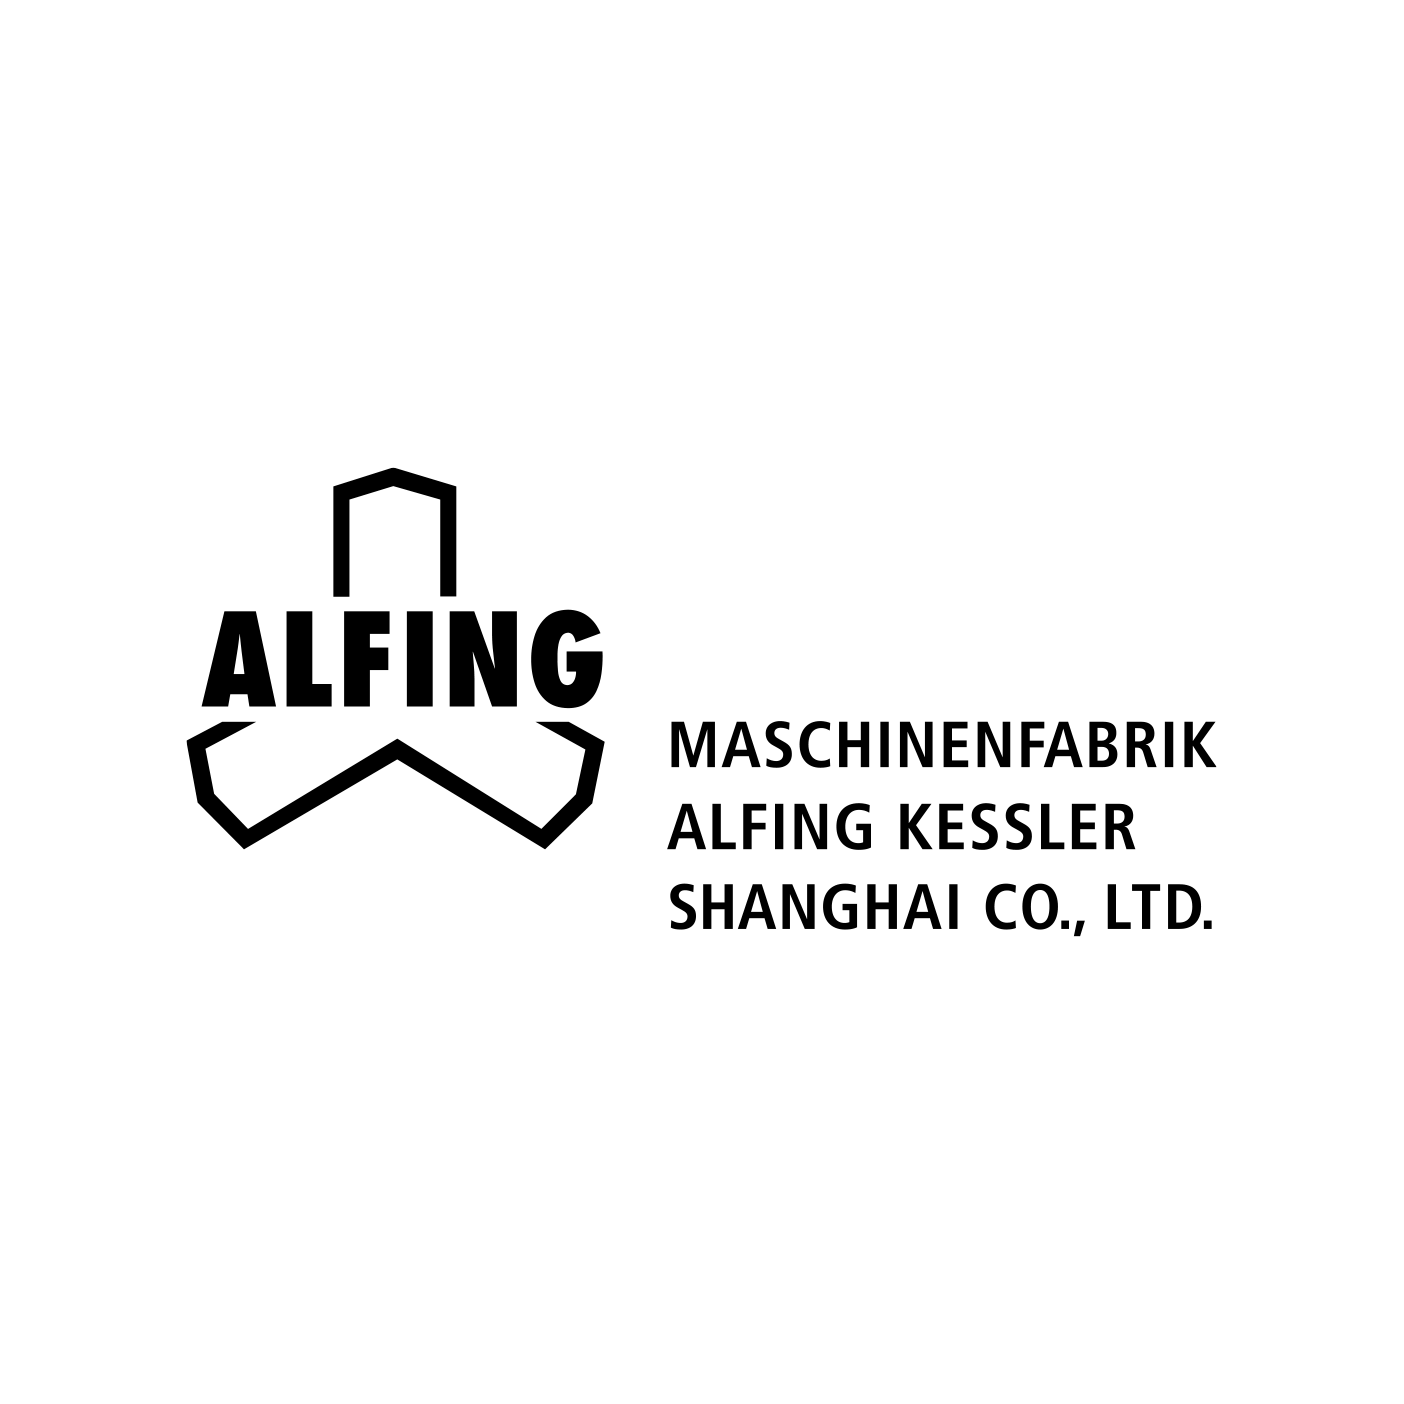 2013 Gründung Maschinenfabrik ALFING Kessler Shanghai Co. Ltd.